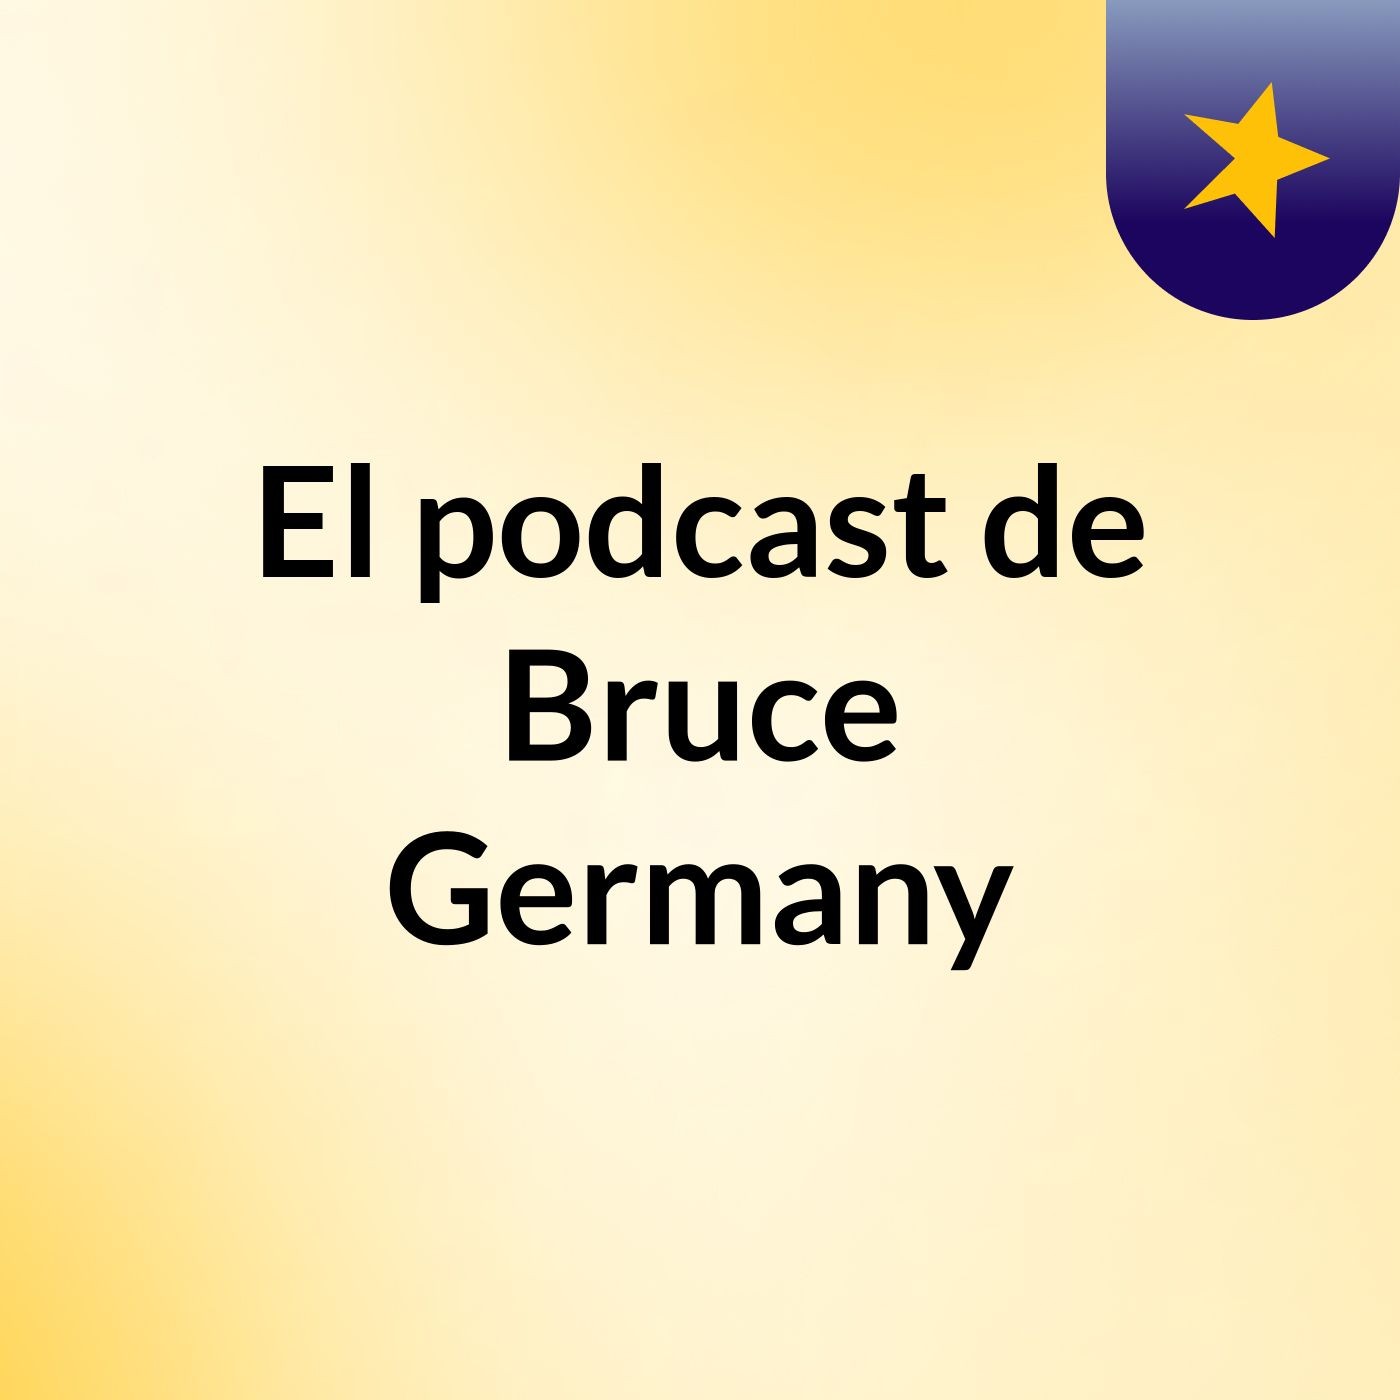 El podcast de Bruce Germany